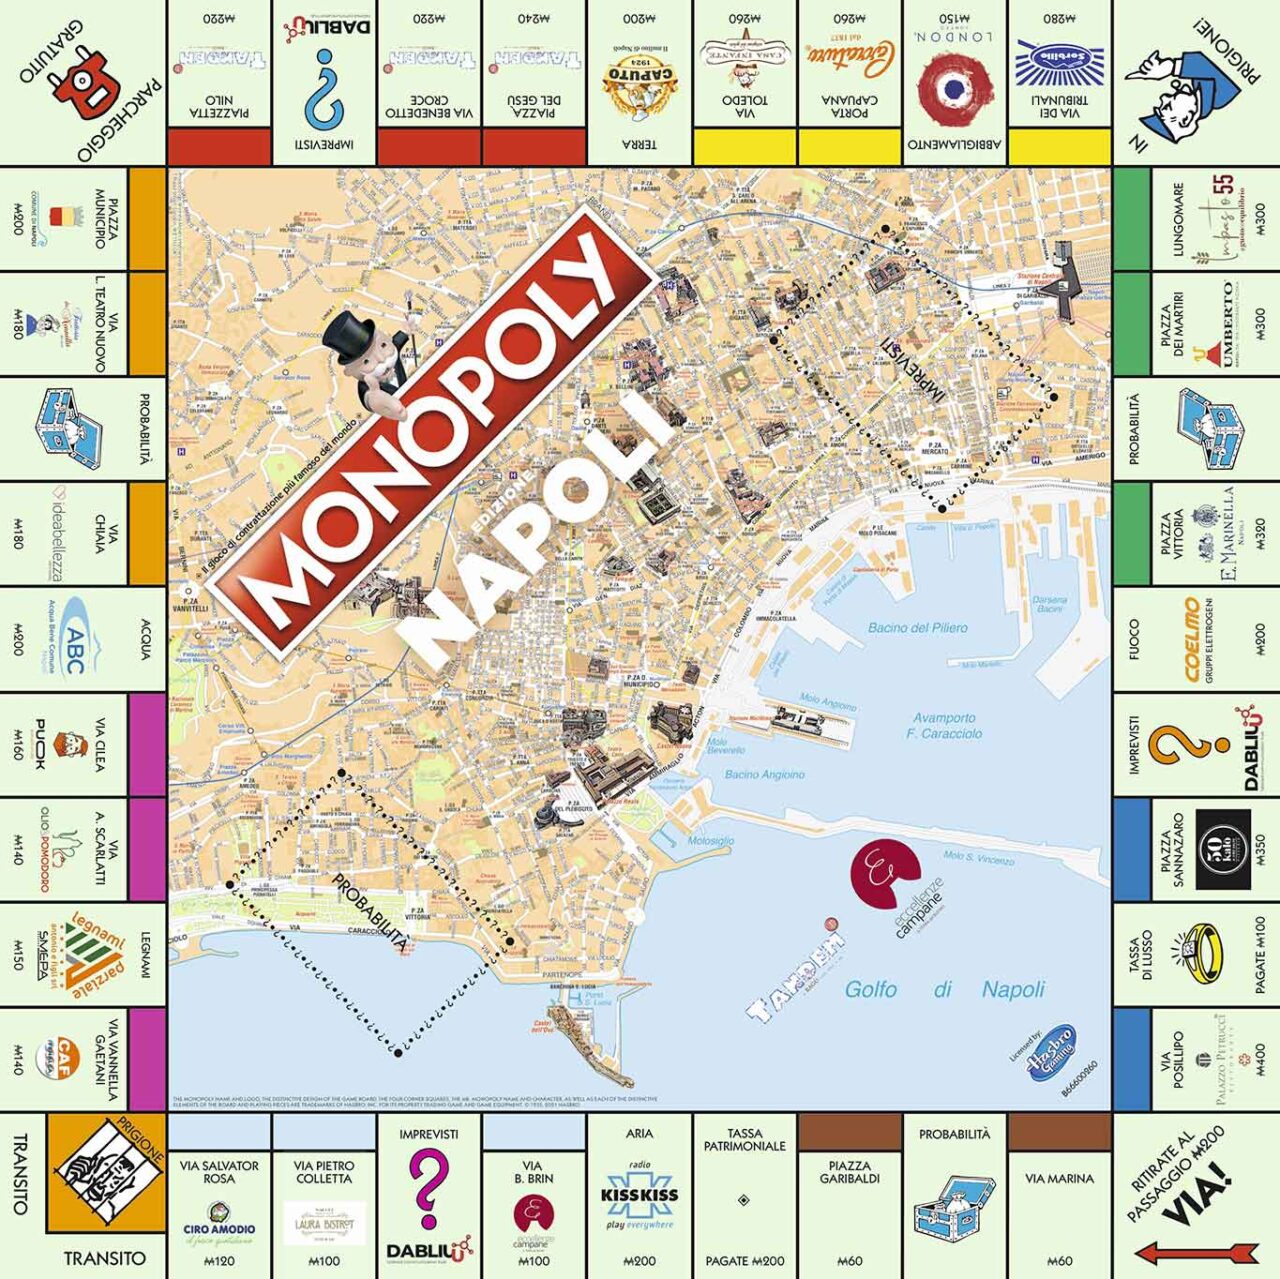 Monopoly Napoli